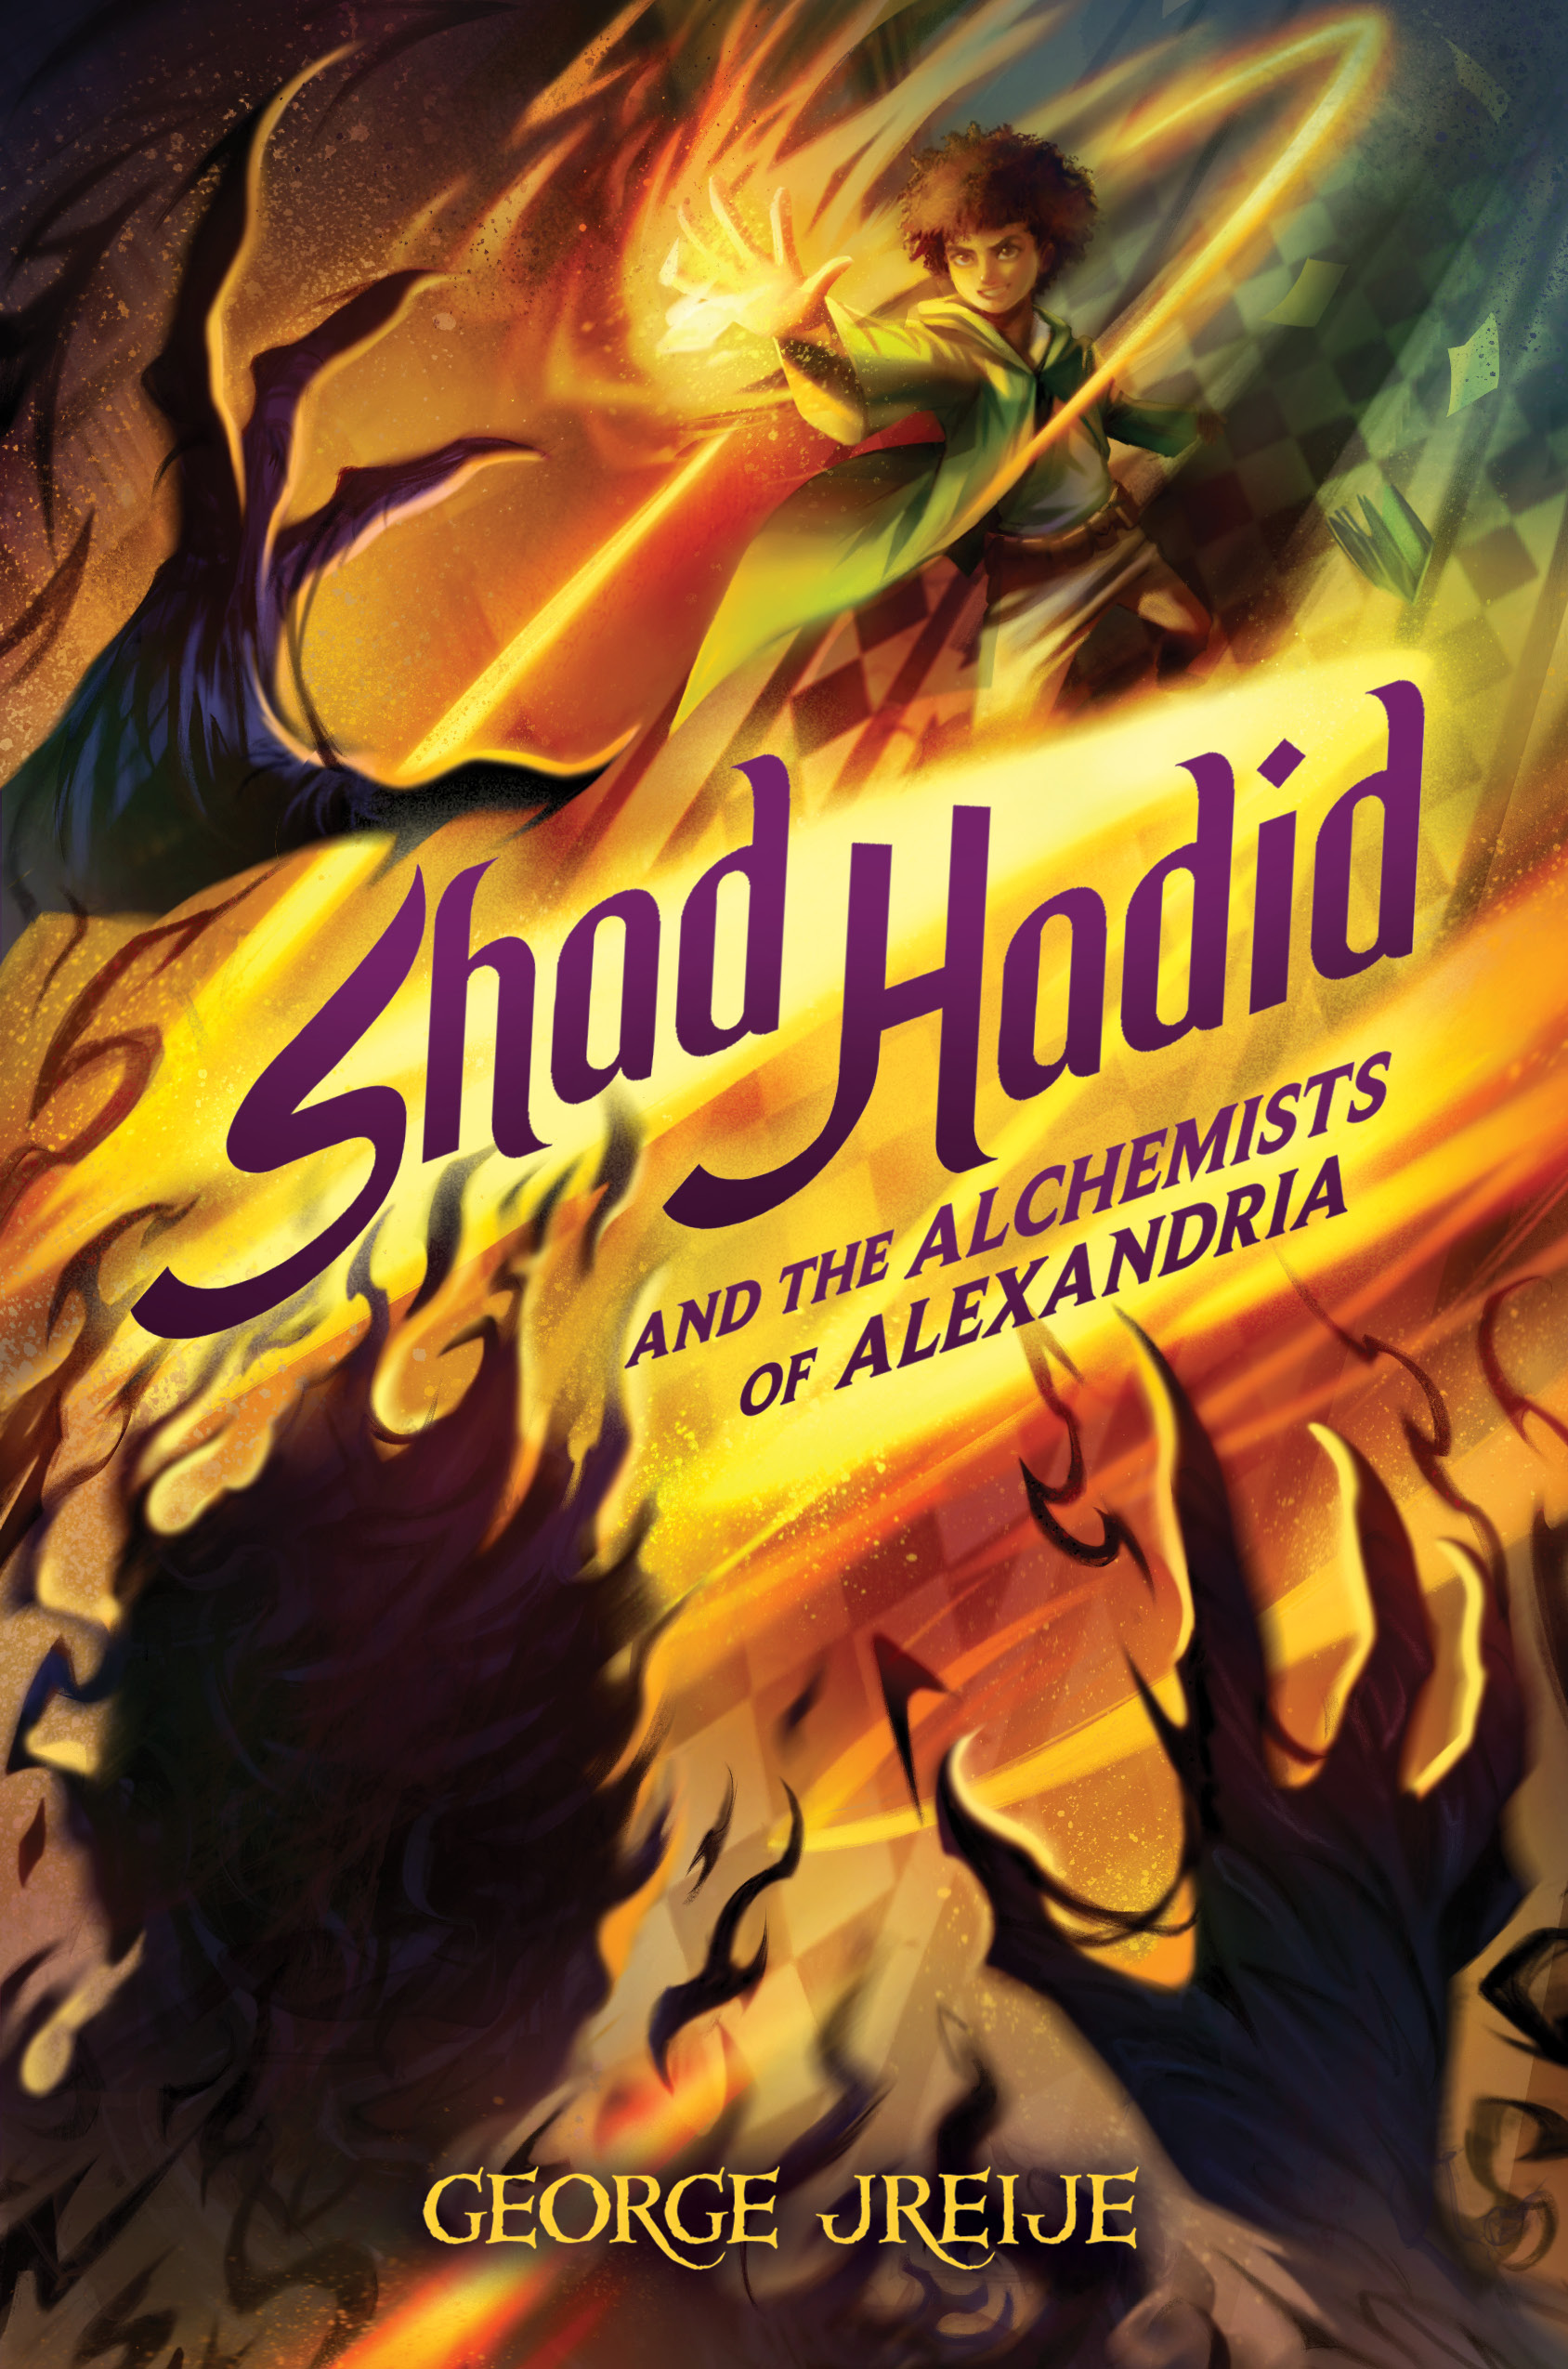 Shad Hadid and the Alchemists of Alexandria